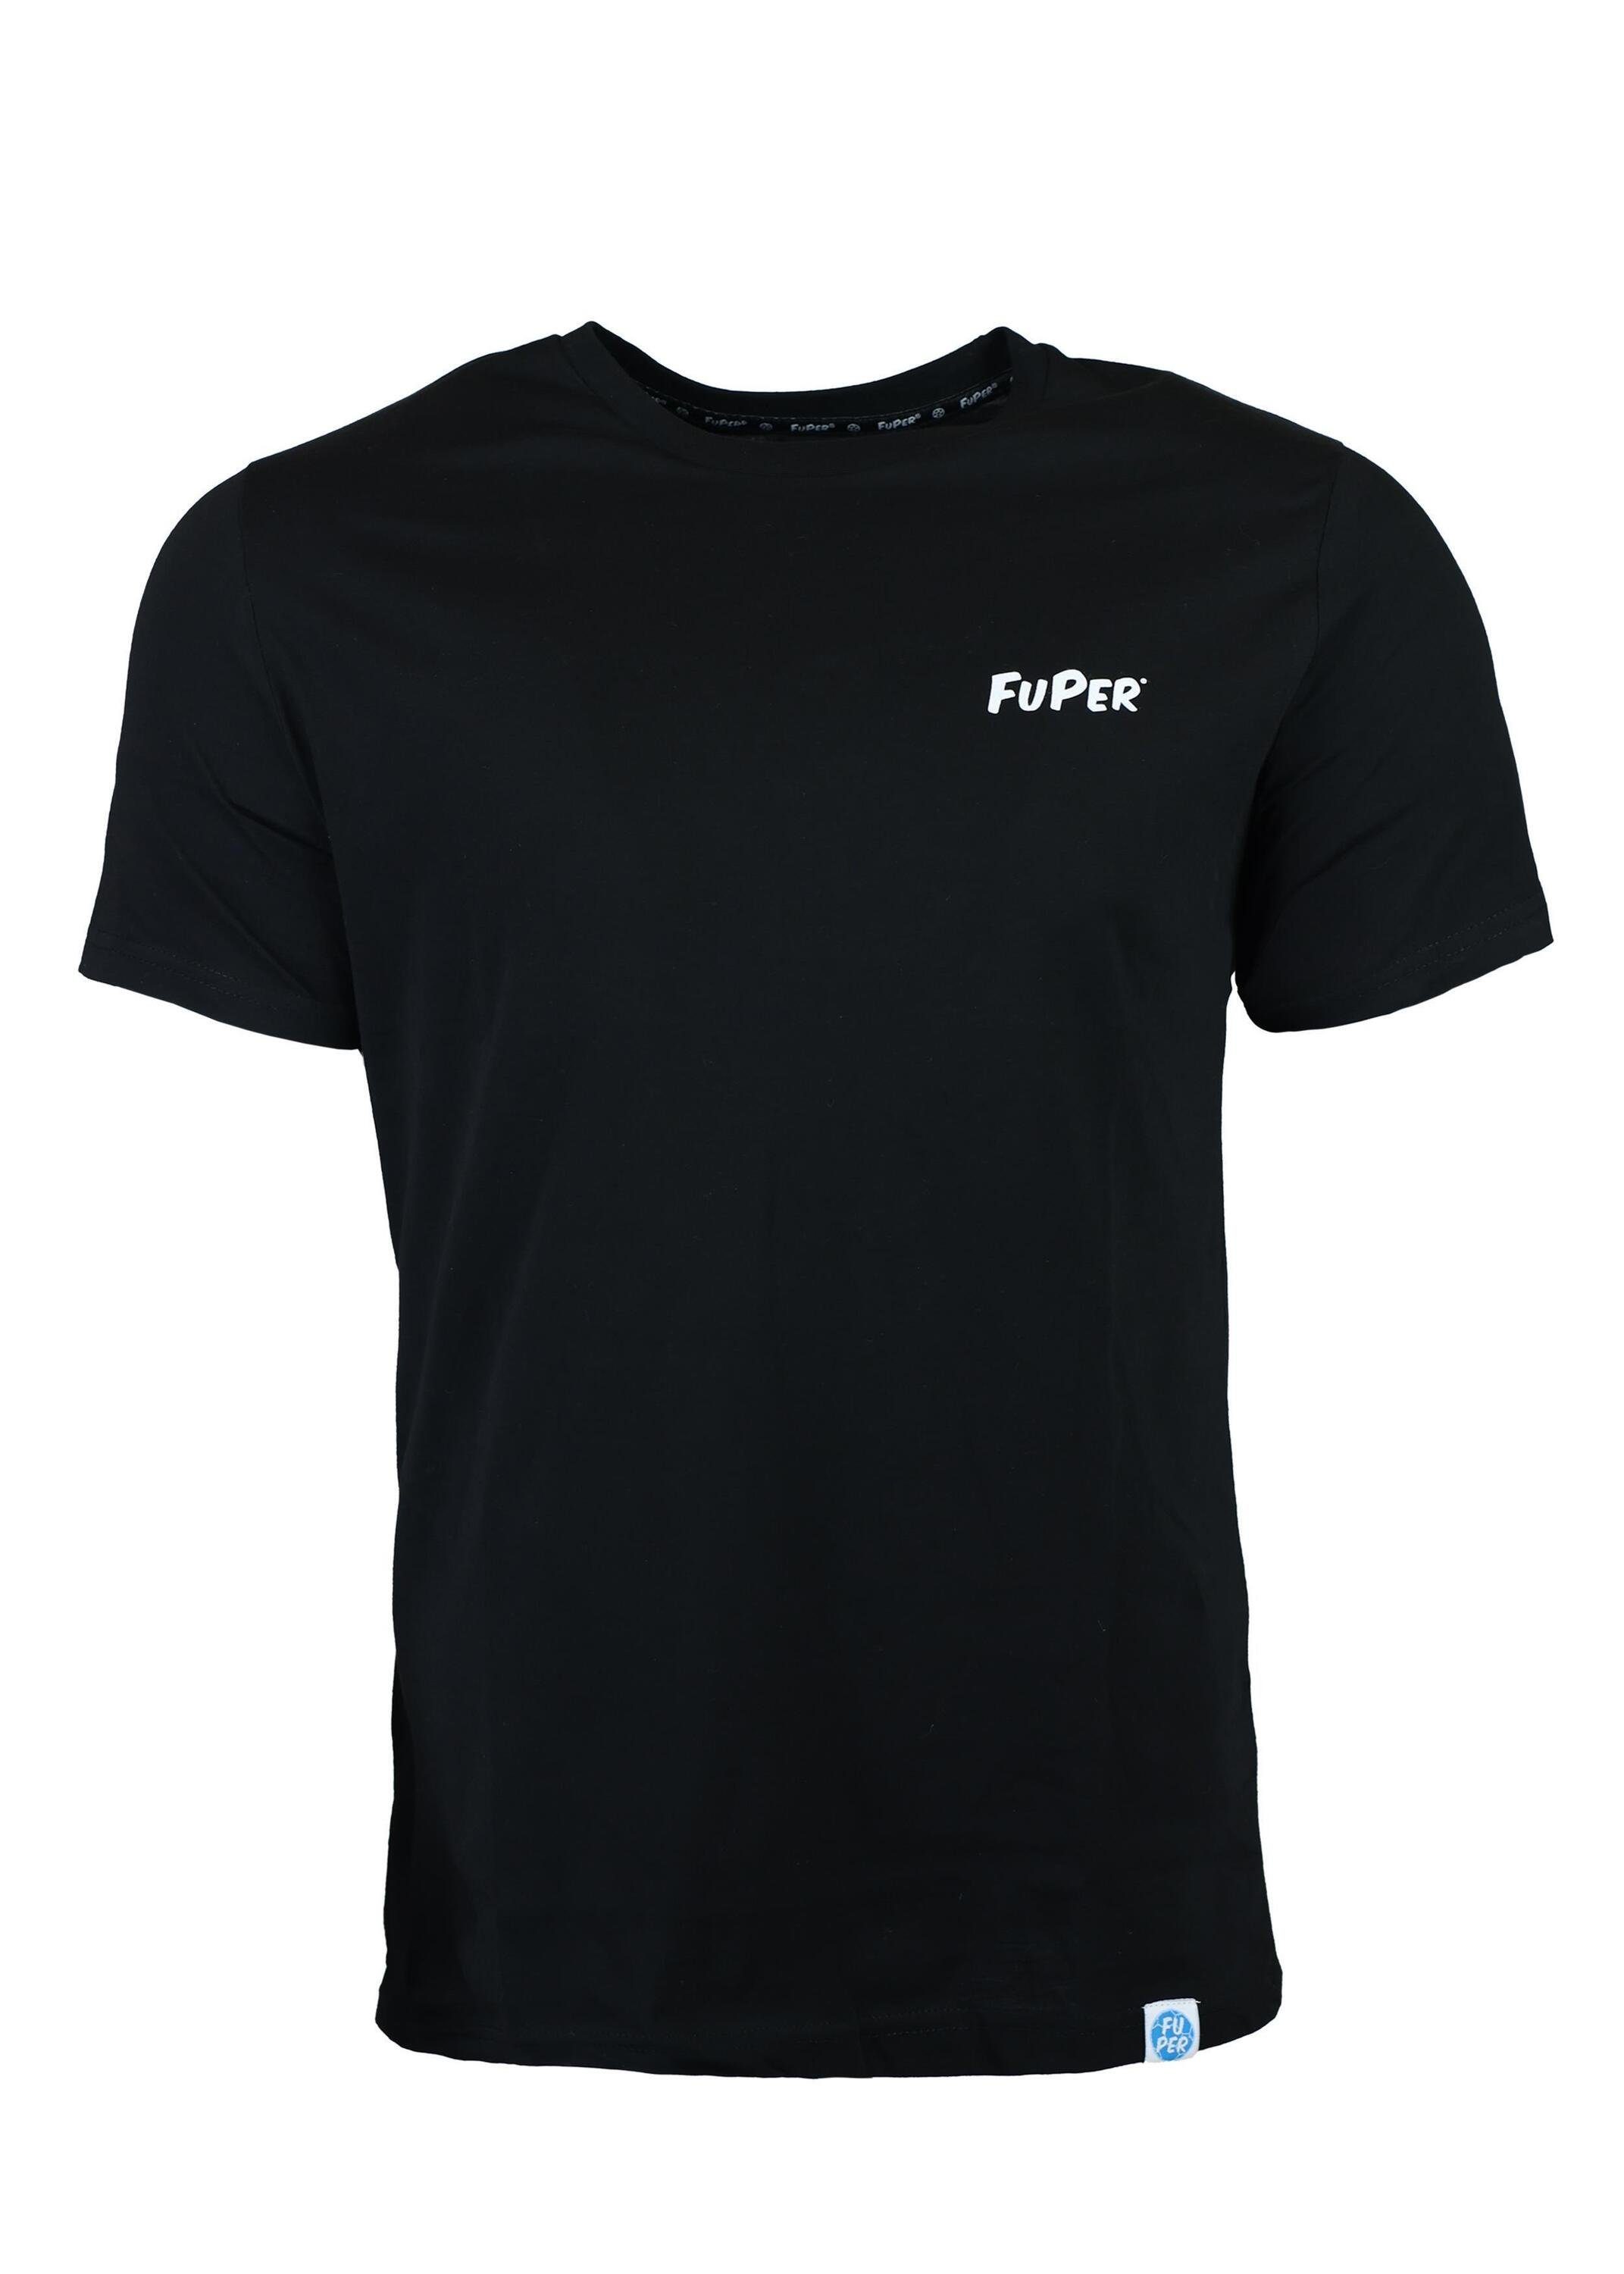 FuPer T-Shirt Luis für Kinder, Fußball, Black Jugend aus Baumwolle